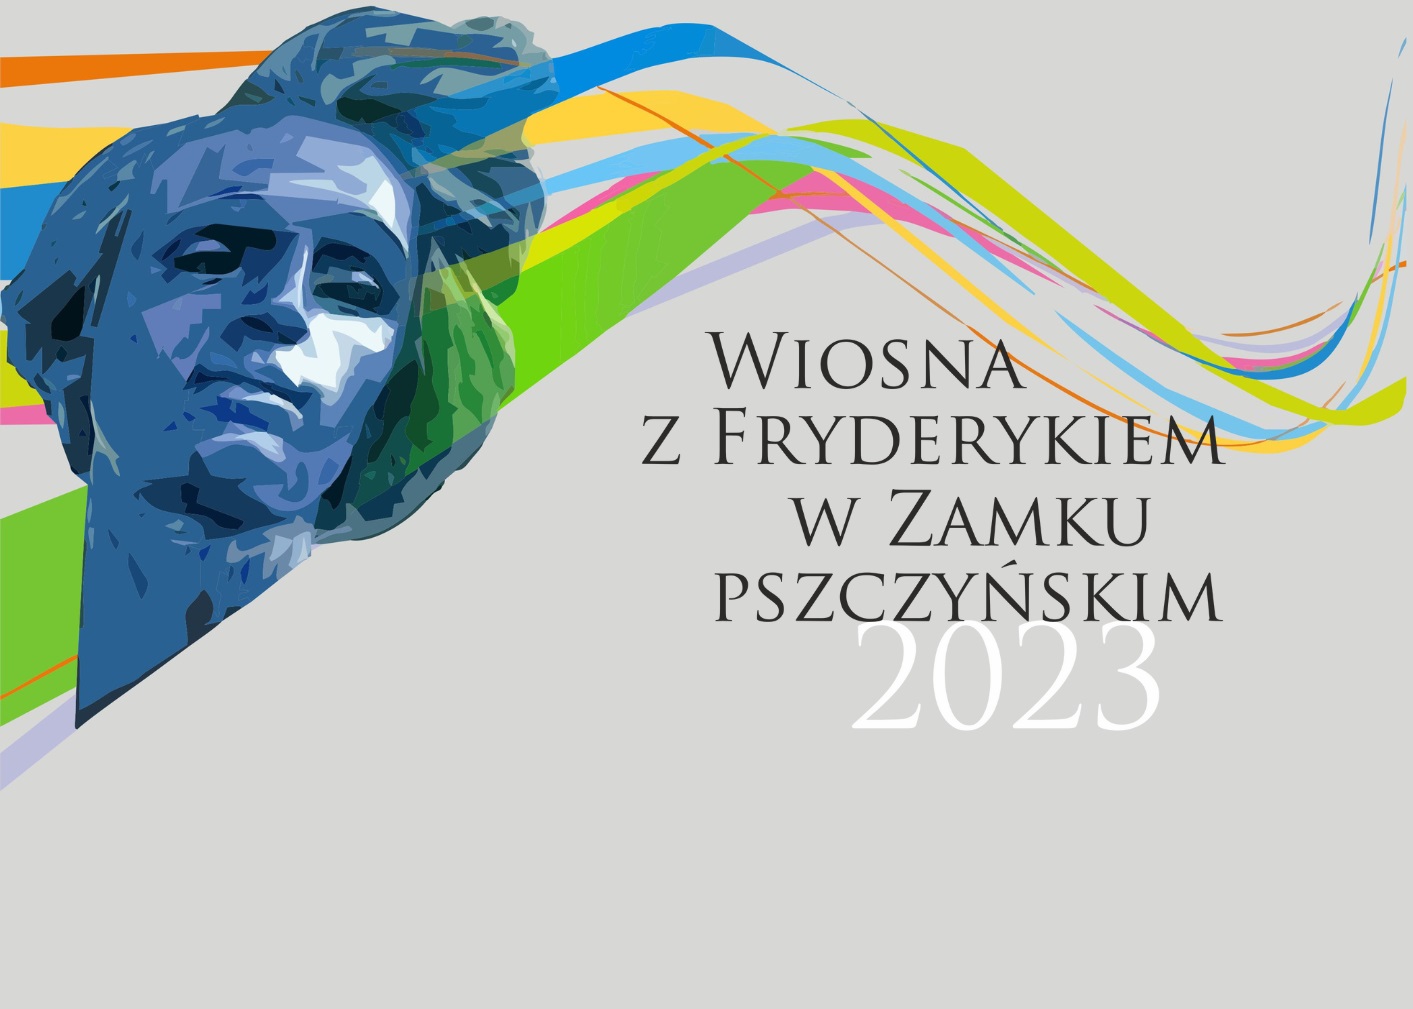 Wiosna z Fryderykiem w Zamku pszczyńskim 2023